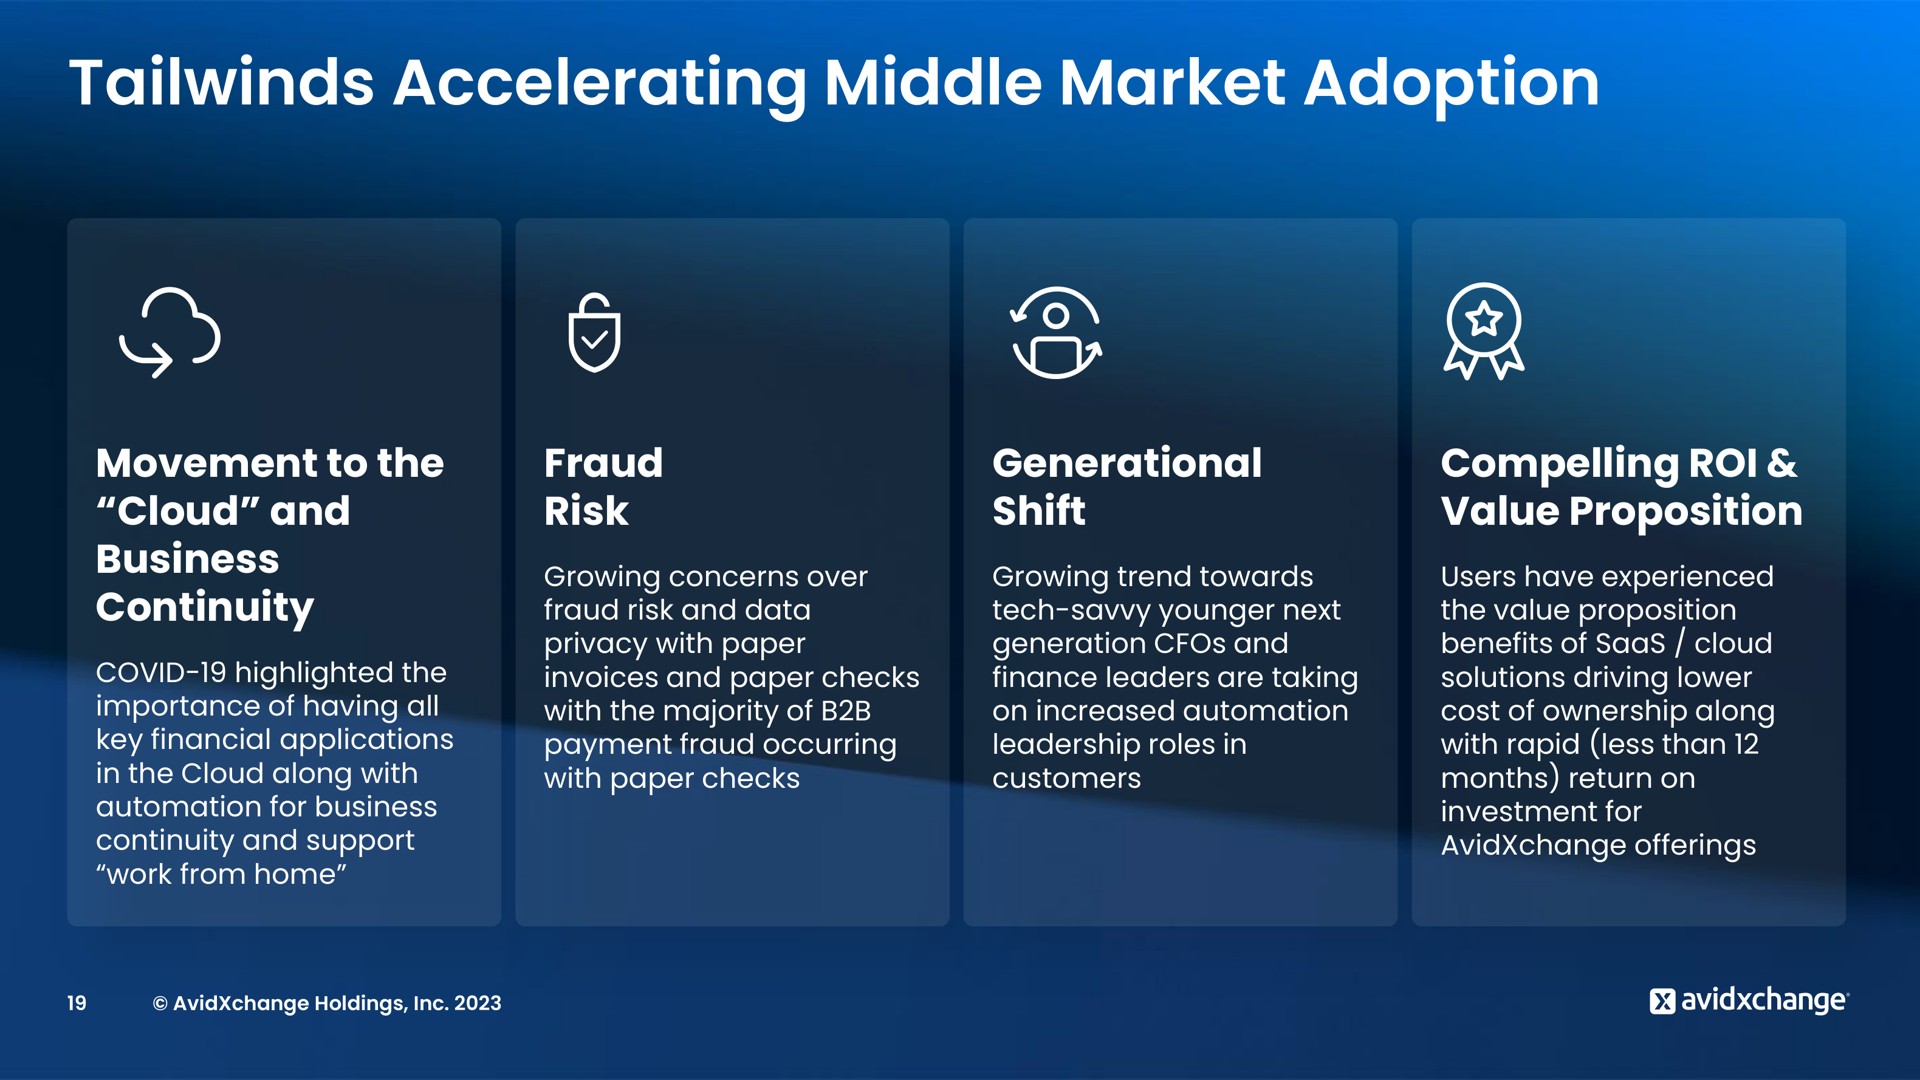 accelerating middle market adoption | AvidXchange